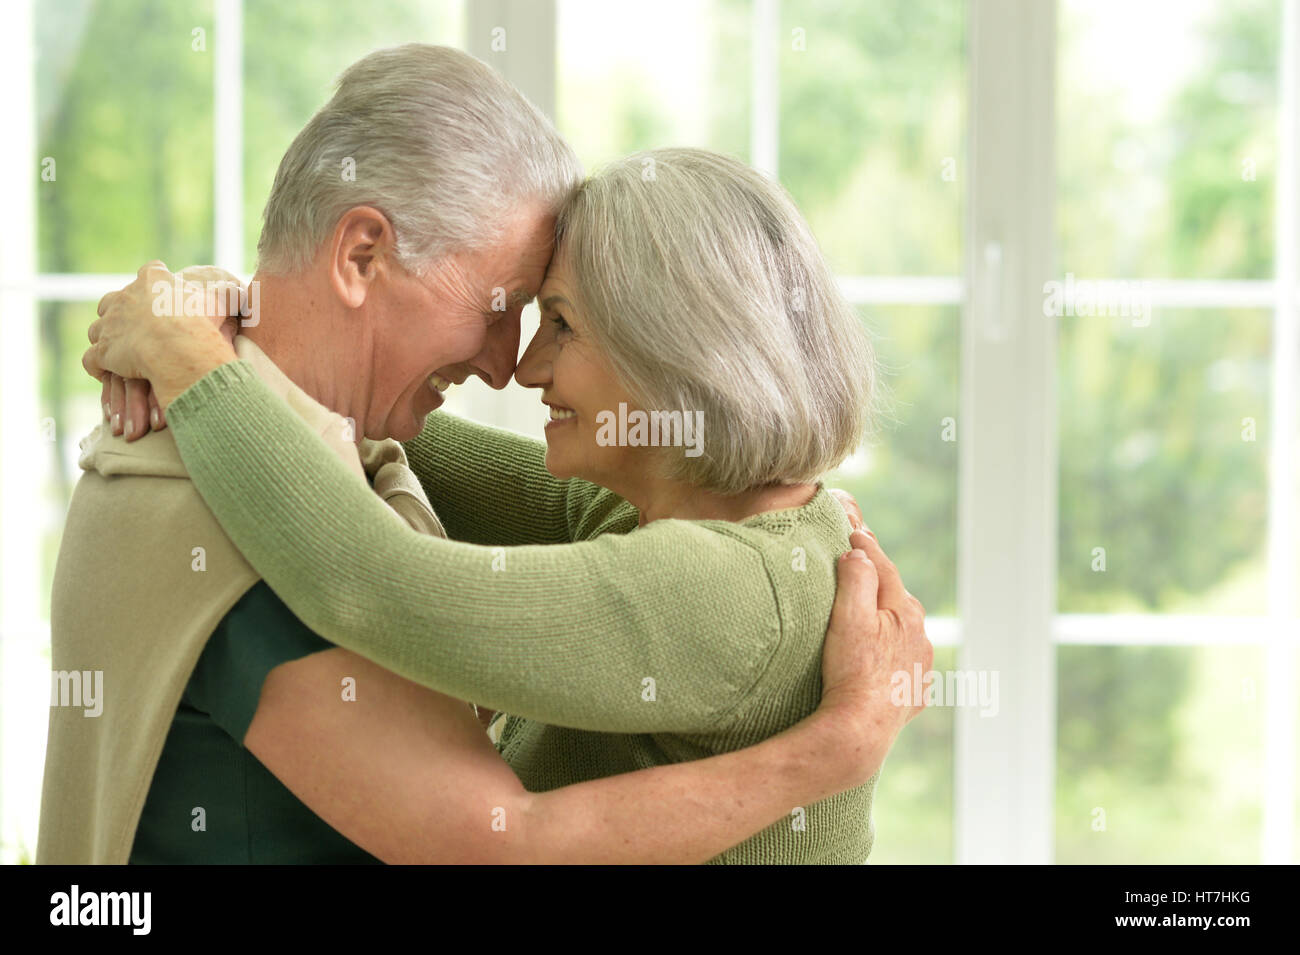 Heureux couple embracing Banque D'Images